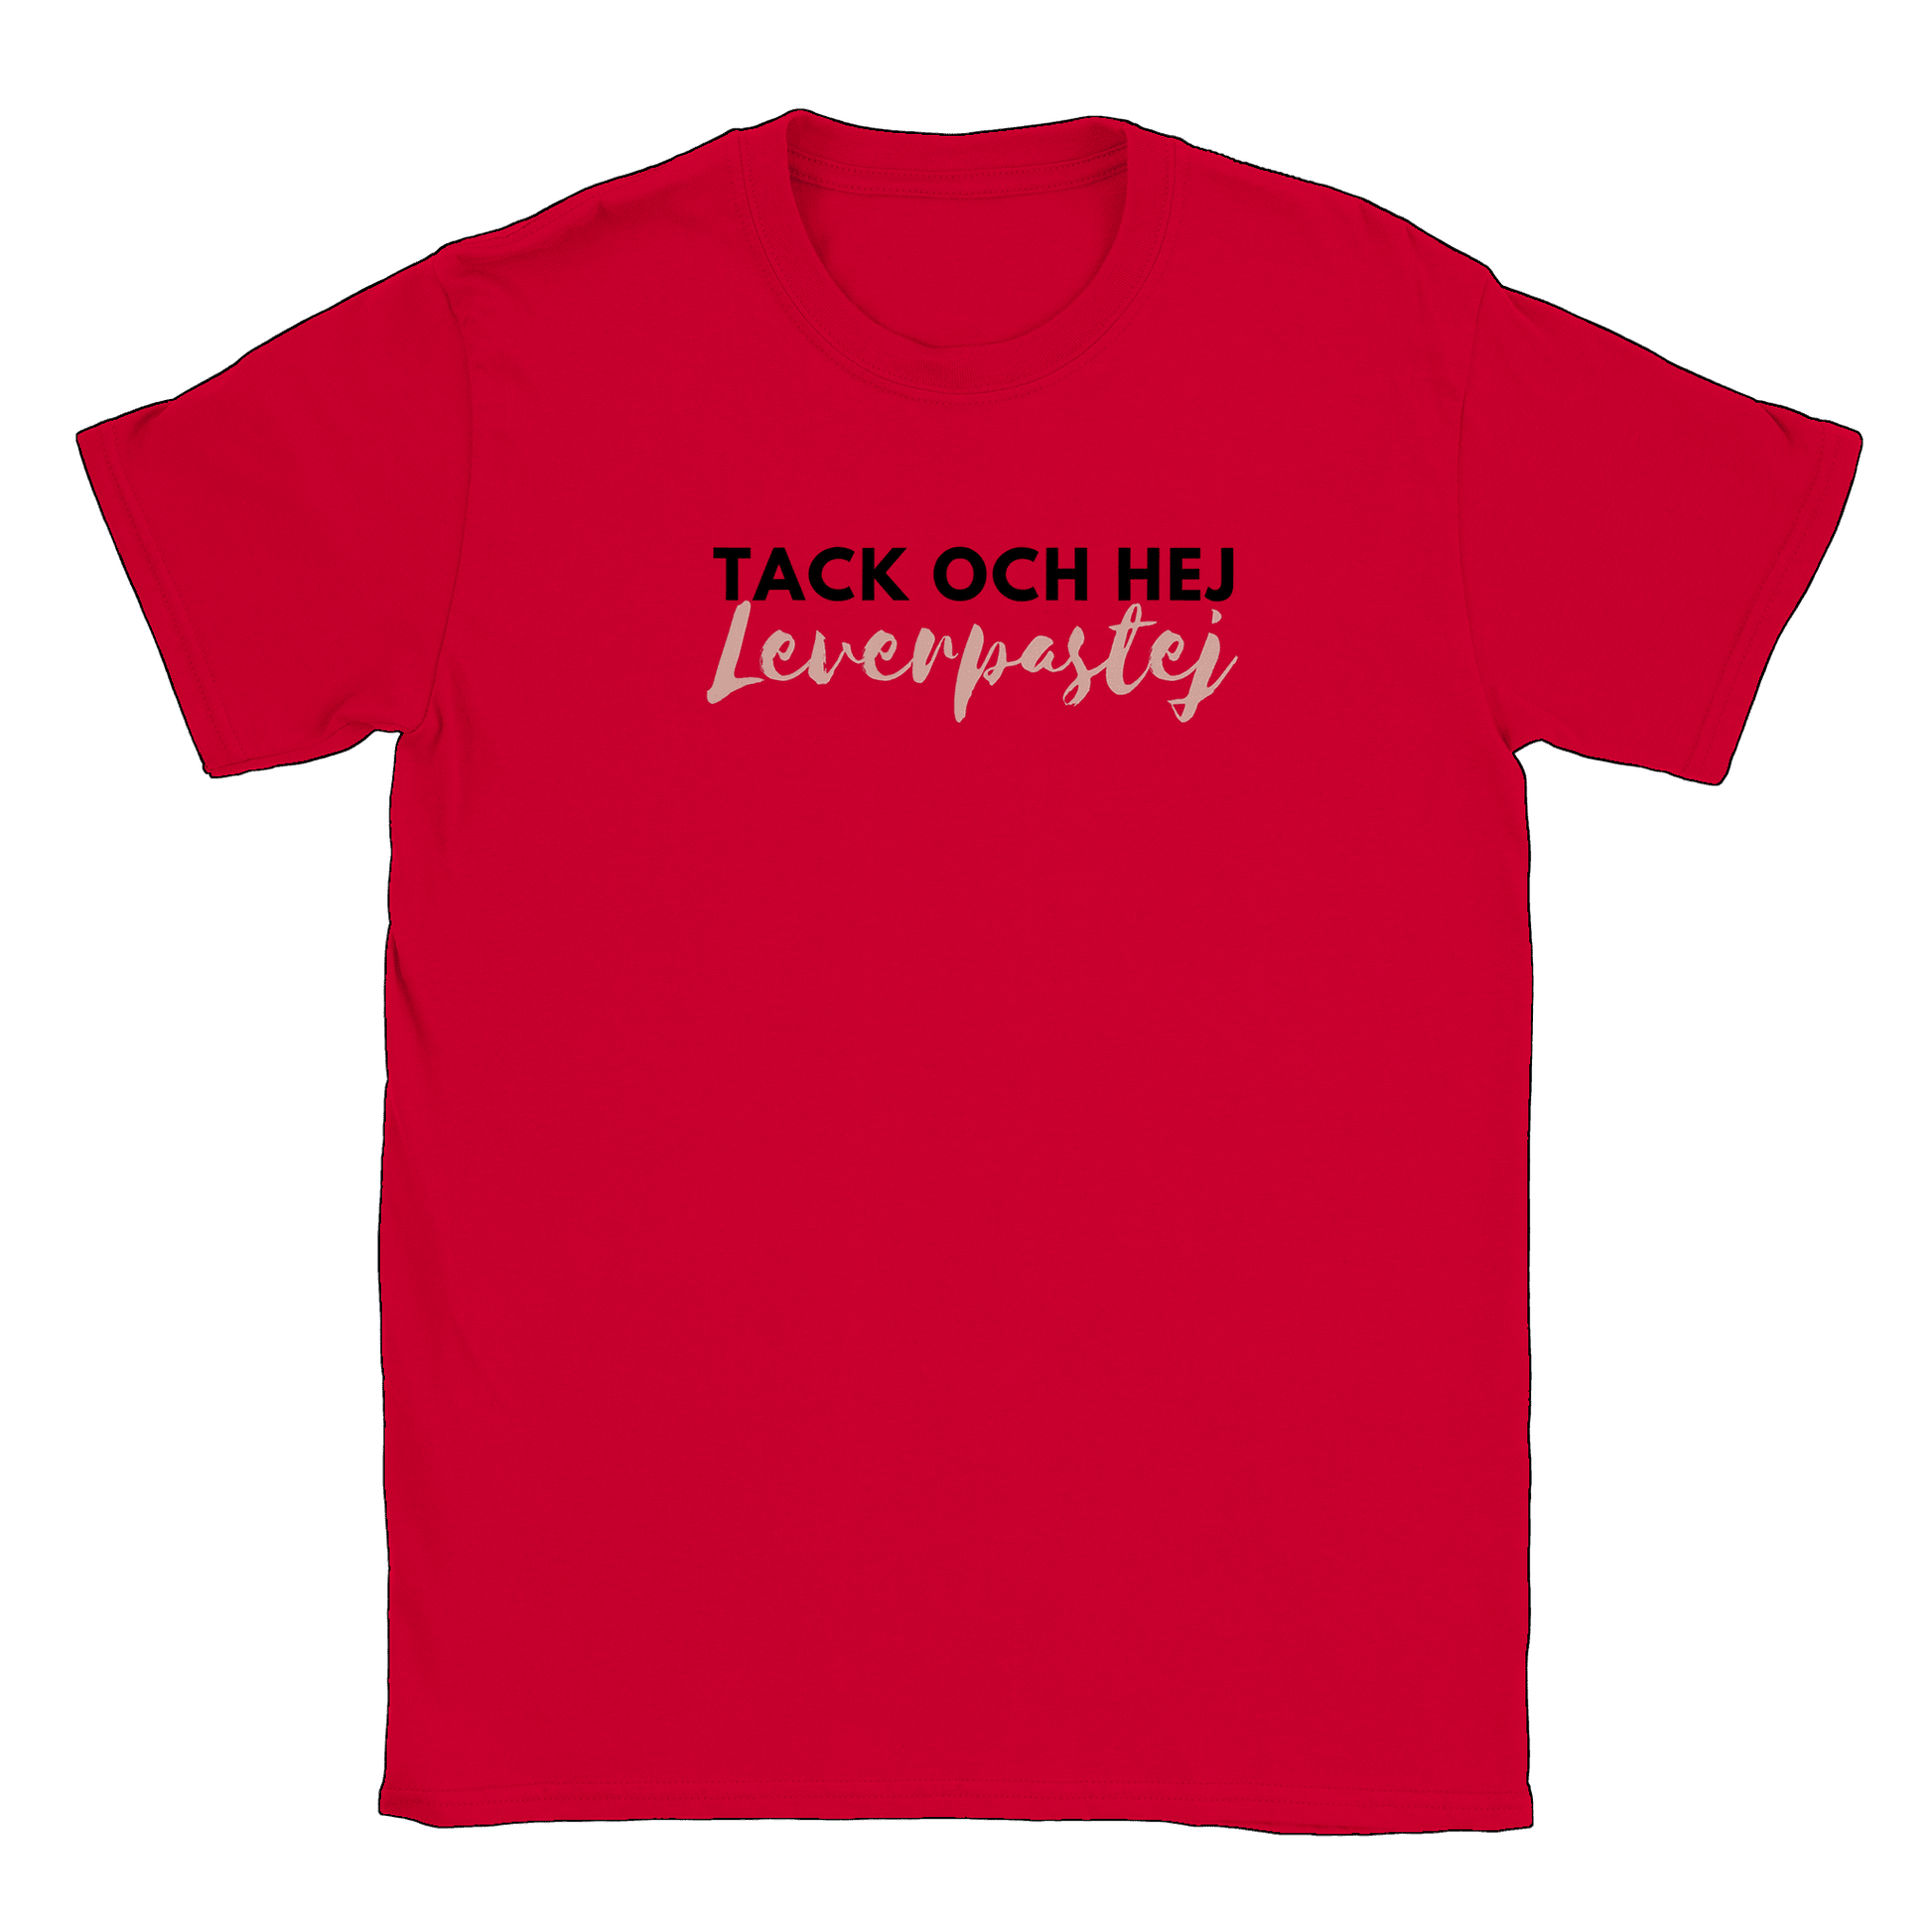 Tack och hej leverpastej - T-shirt Röd